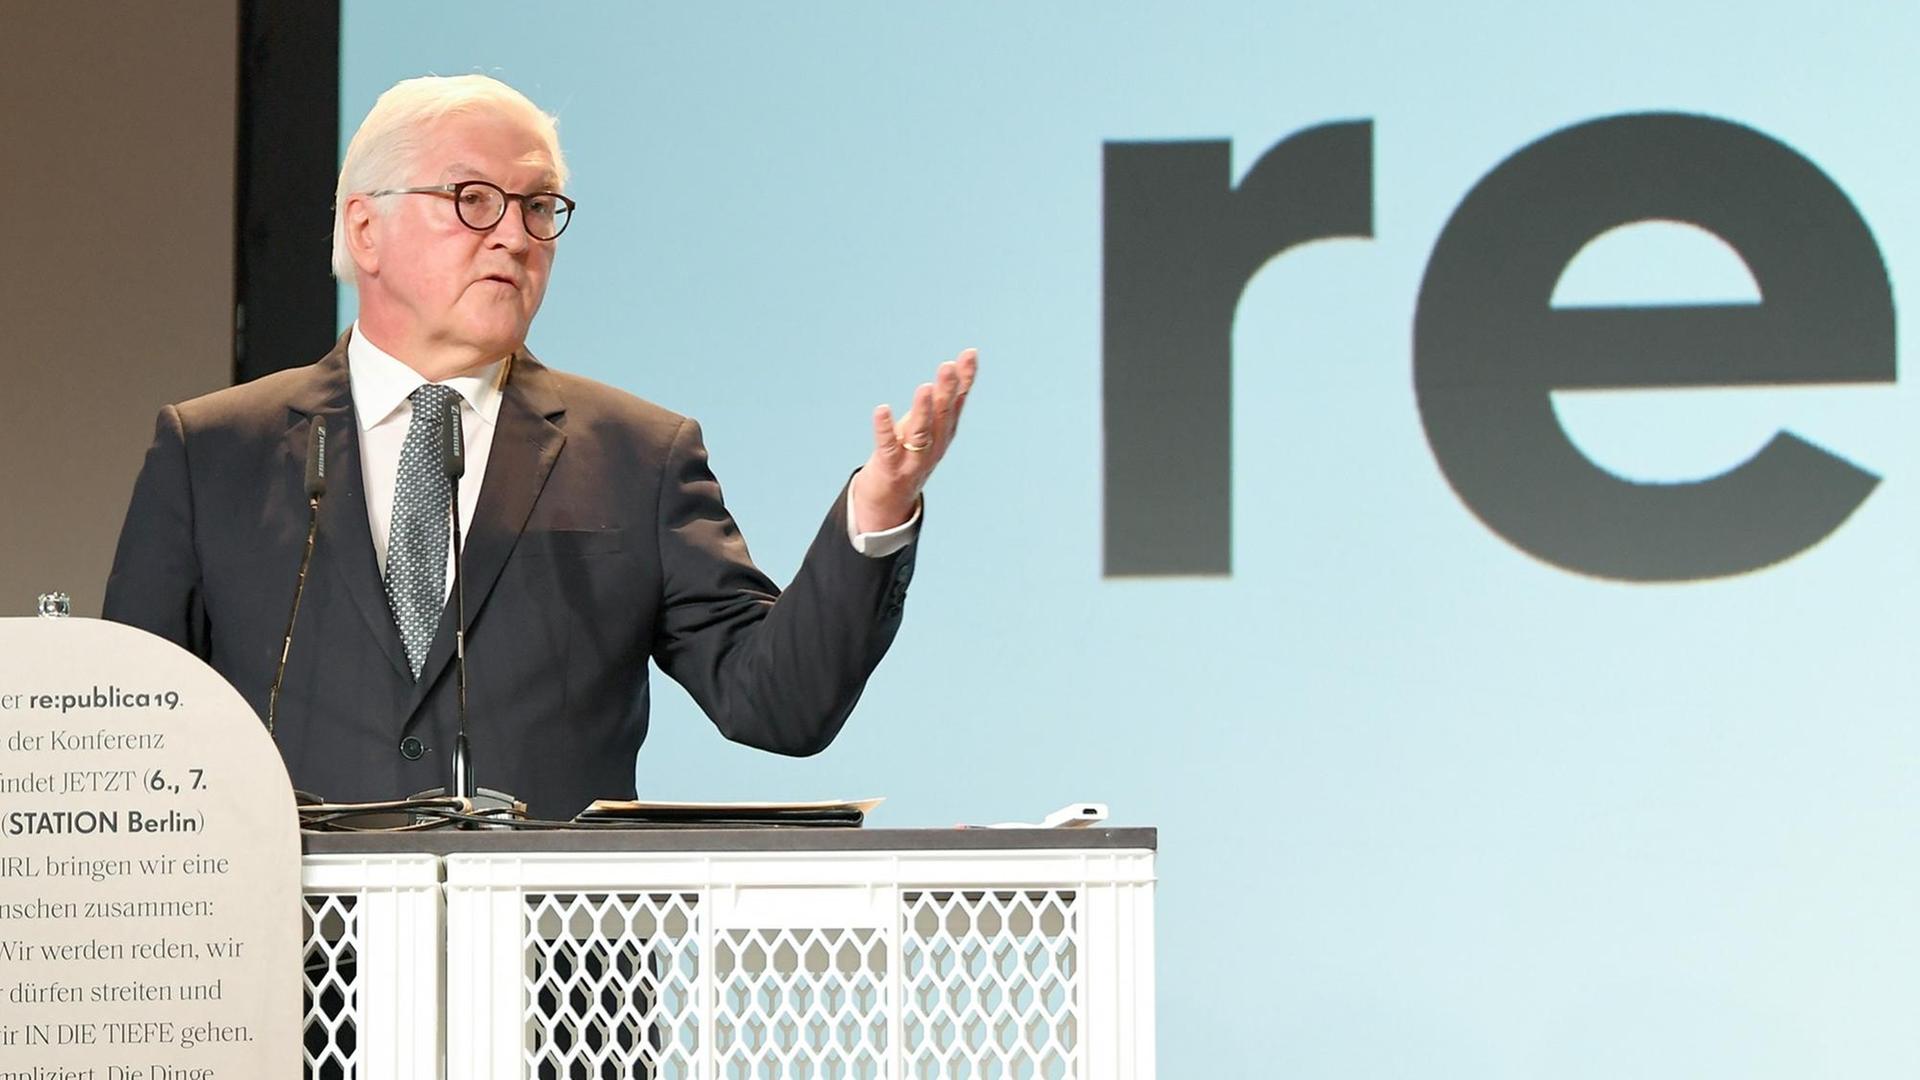 Bundespräsident Frank-Walter Steinmeier spricht auf der Internetkonferenz "re:publica".